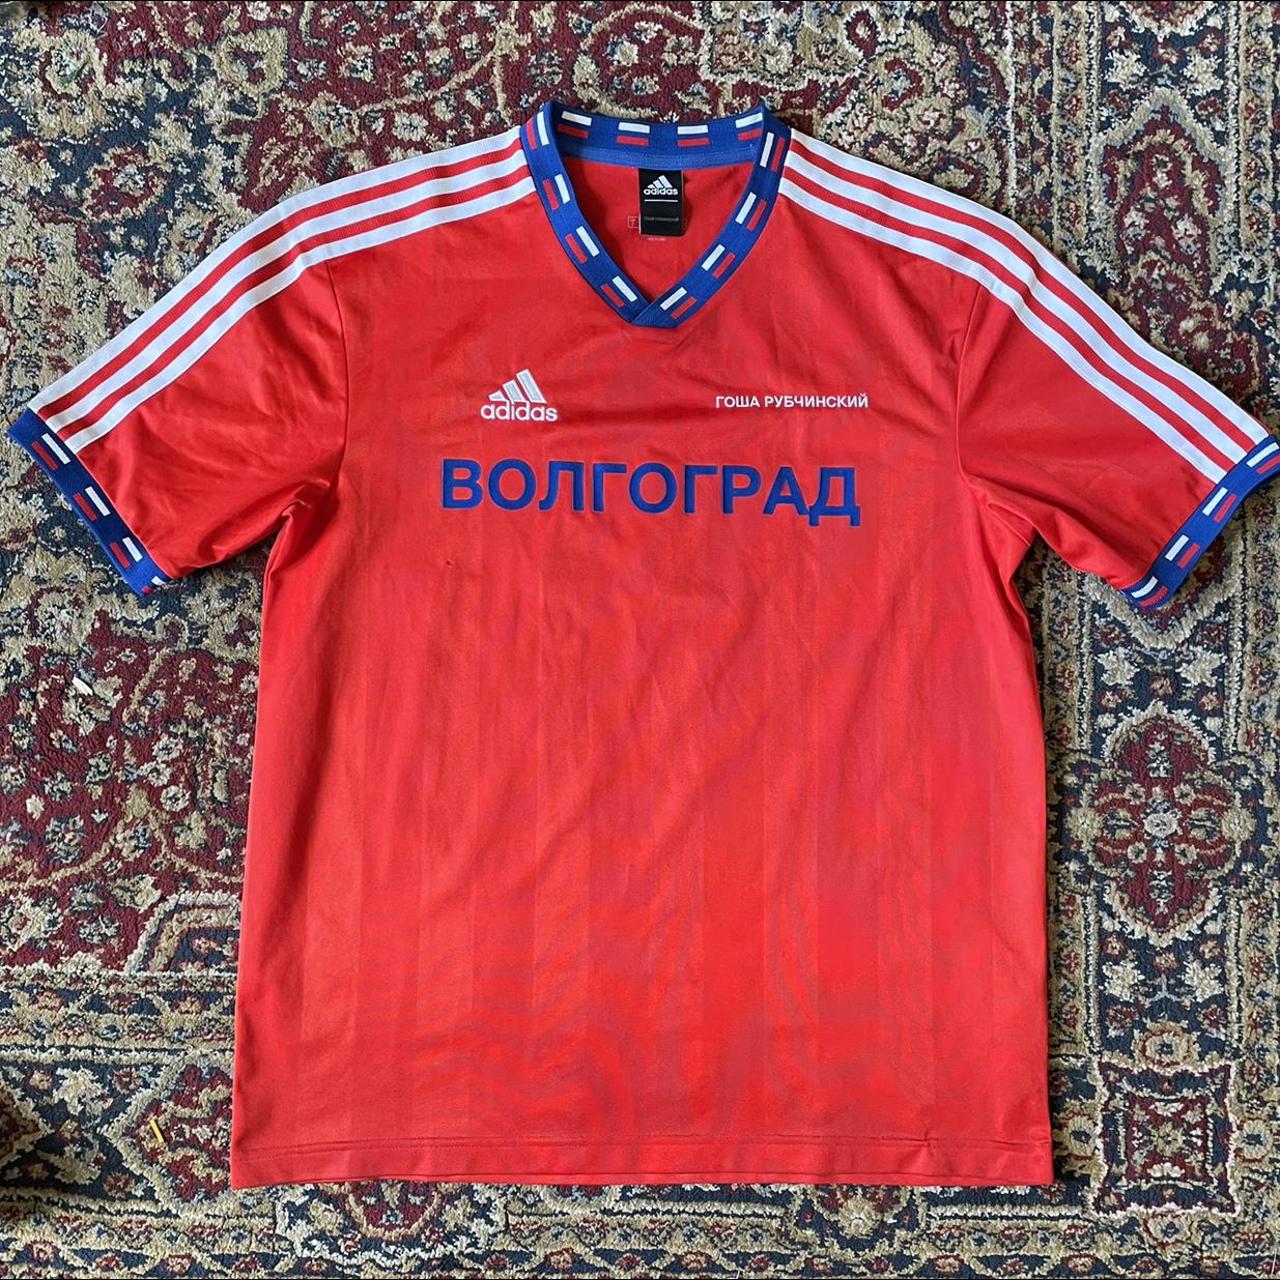 Gosha Rubchinskiy Men's T-shirt